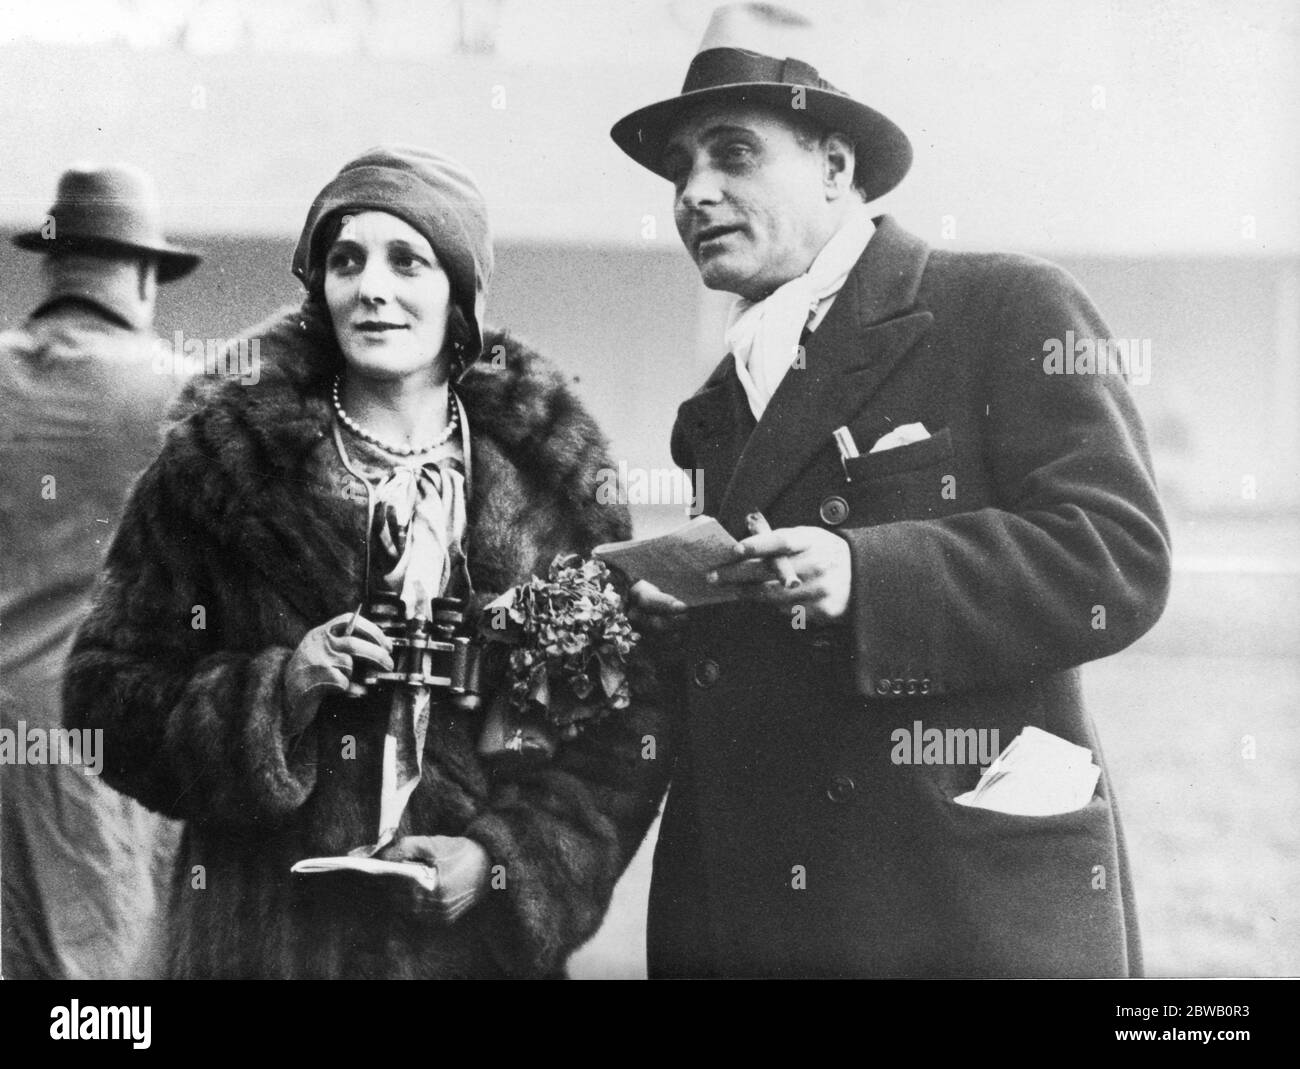 Abgebildet bei den Derby-Rennen sind die Schauspieler, Herr und Frau Henry Edwards (Frau Edwards war früher Miss Chrissie White, der berühmte britische Filmstar). Herr Edwards war ein hervorragender Erfolg in dem Film "Flag Lieutenant", der vor kurzem erschien. November 1929 Stockfoto